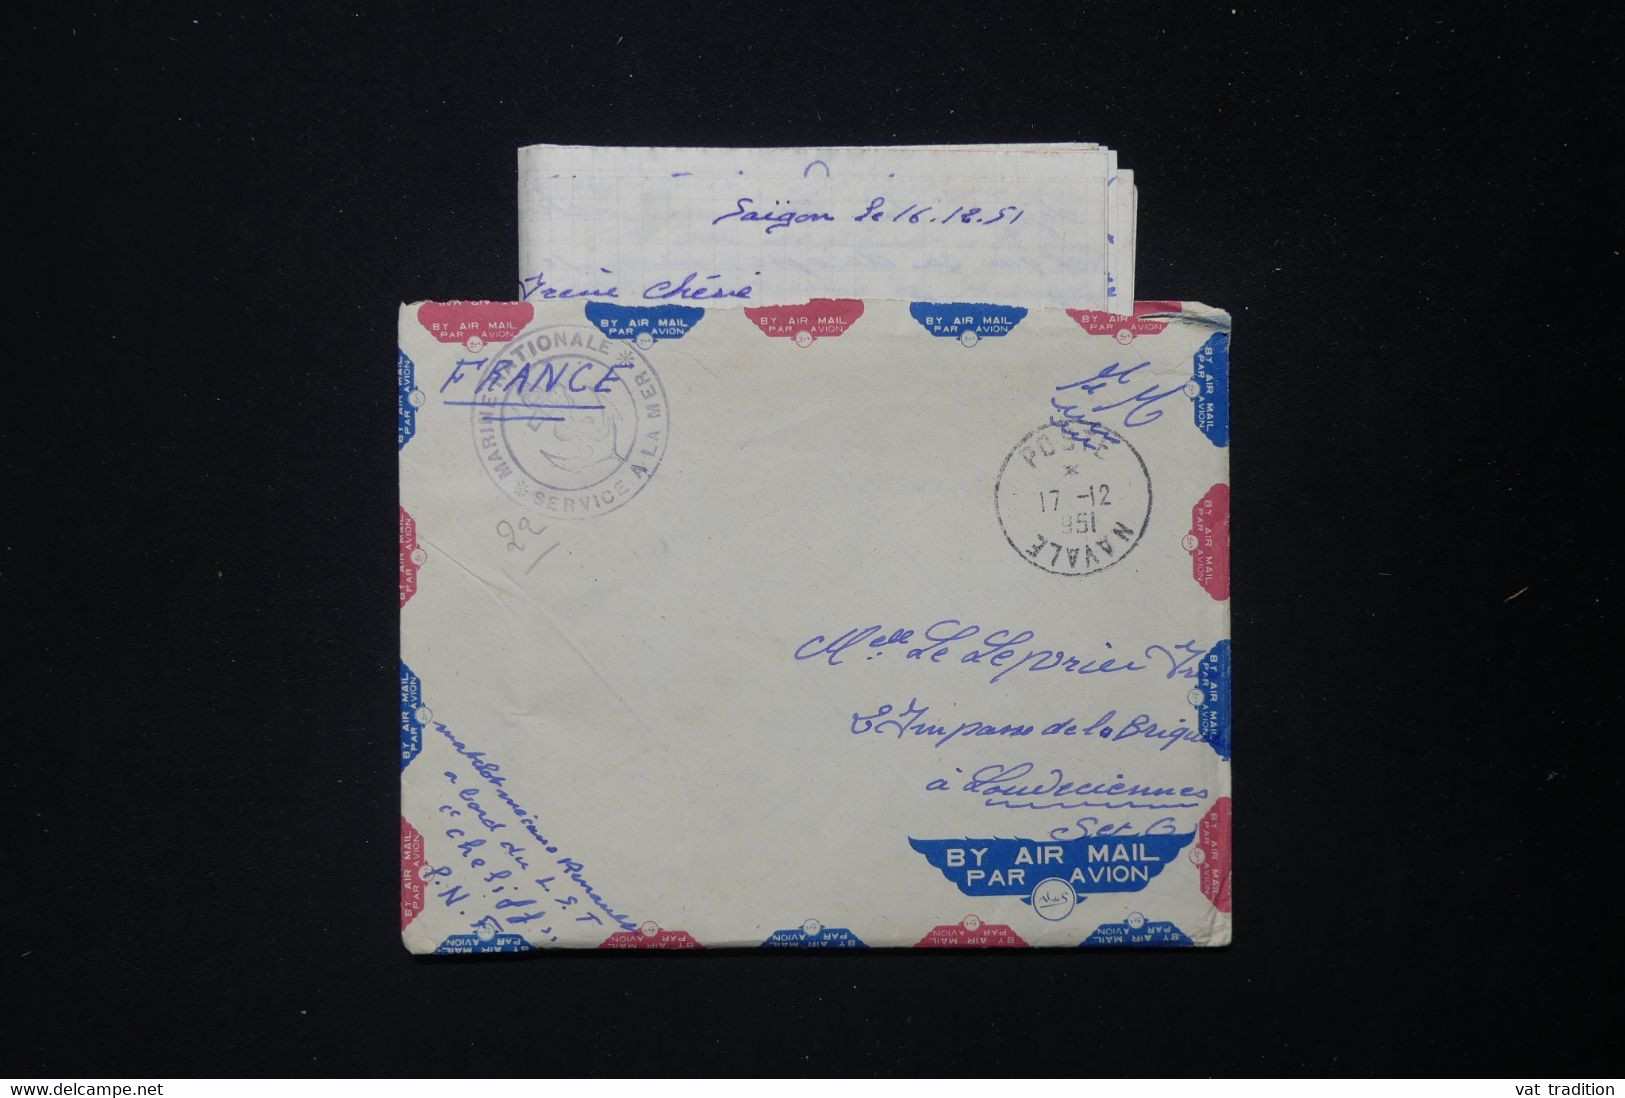 FRANCE - Enveloppe Avec Contenu D'un Marin En Indochine Pour La France En 1951 - L 83868 - Guerra De Indochina/Vietnam